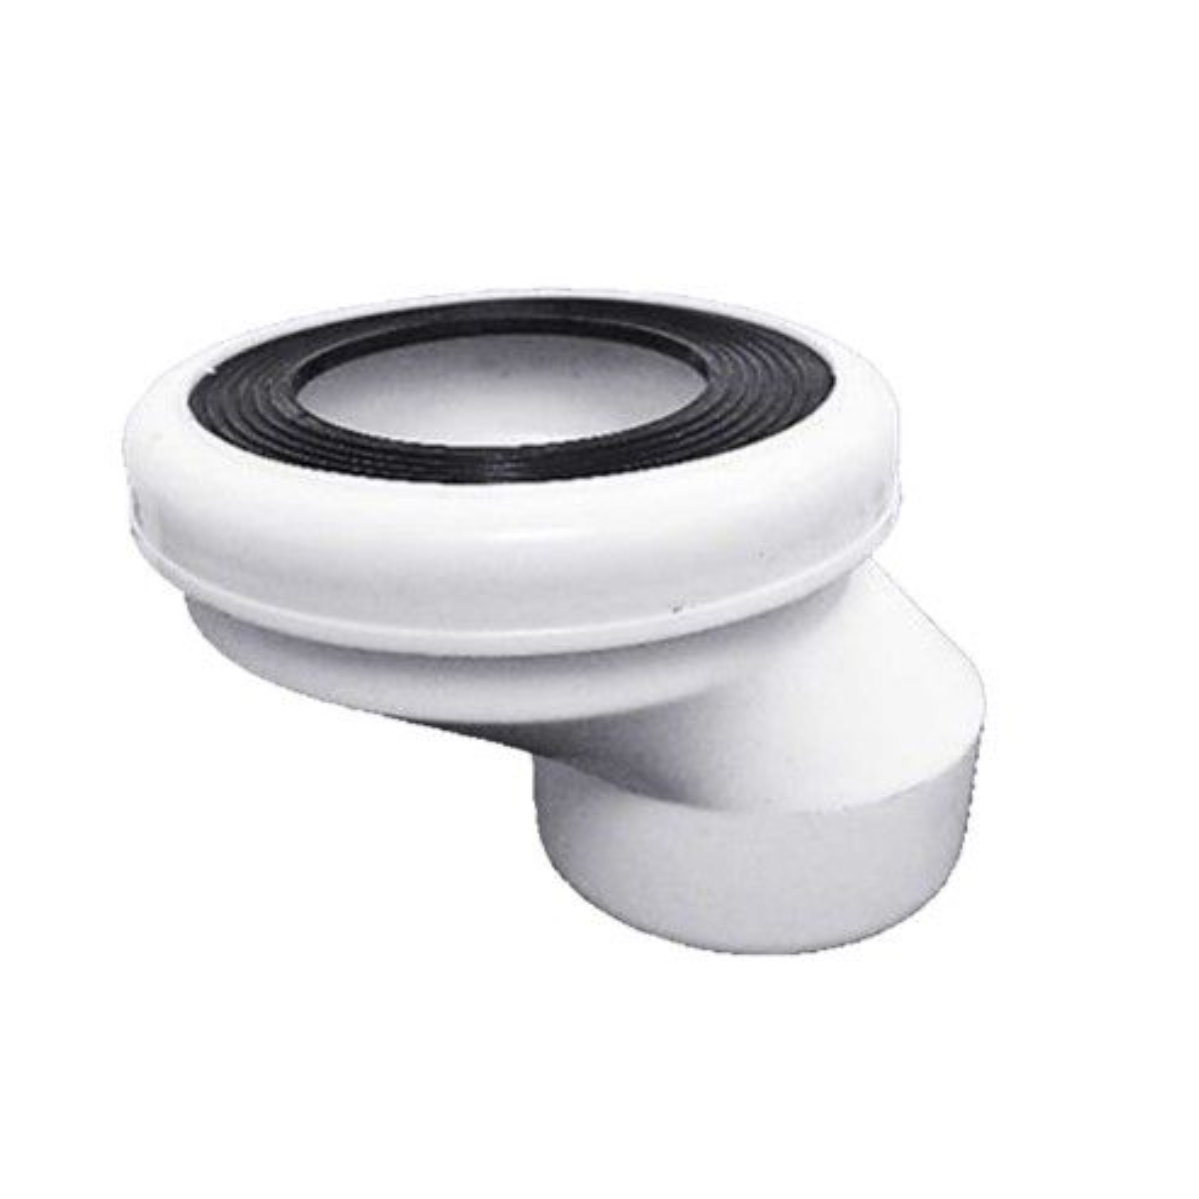 Toilet Bowl Pan Collar 2"/50MM